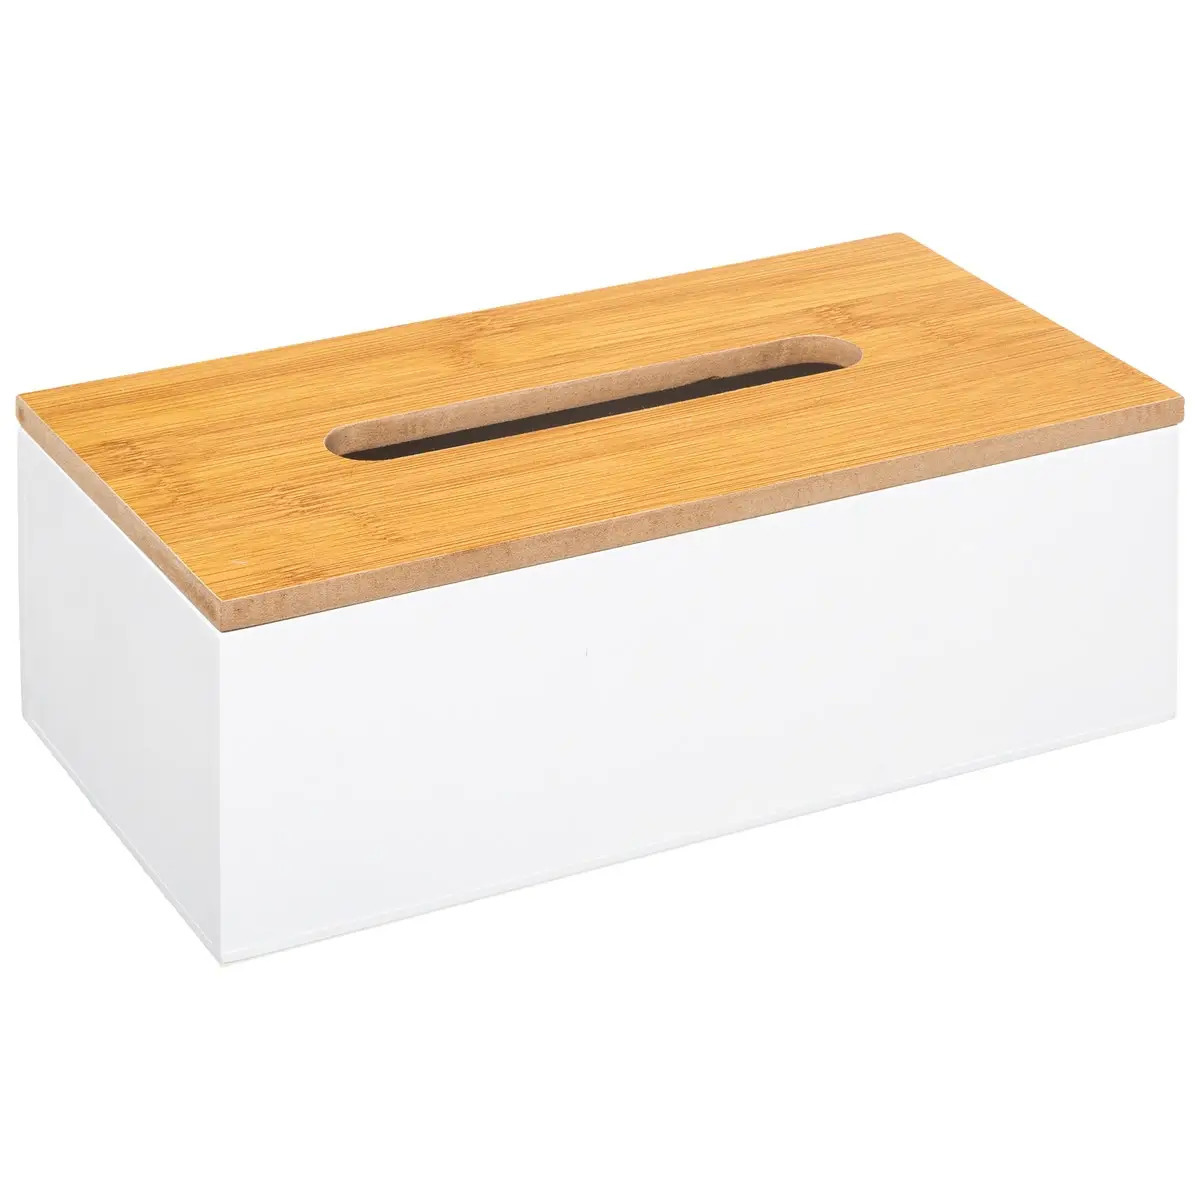 5Five Tissuedoos-zakdoekjes box wit MDF hout bamboe deksel 25 x 13 x 9 cm